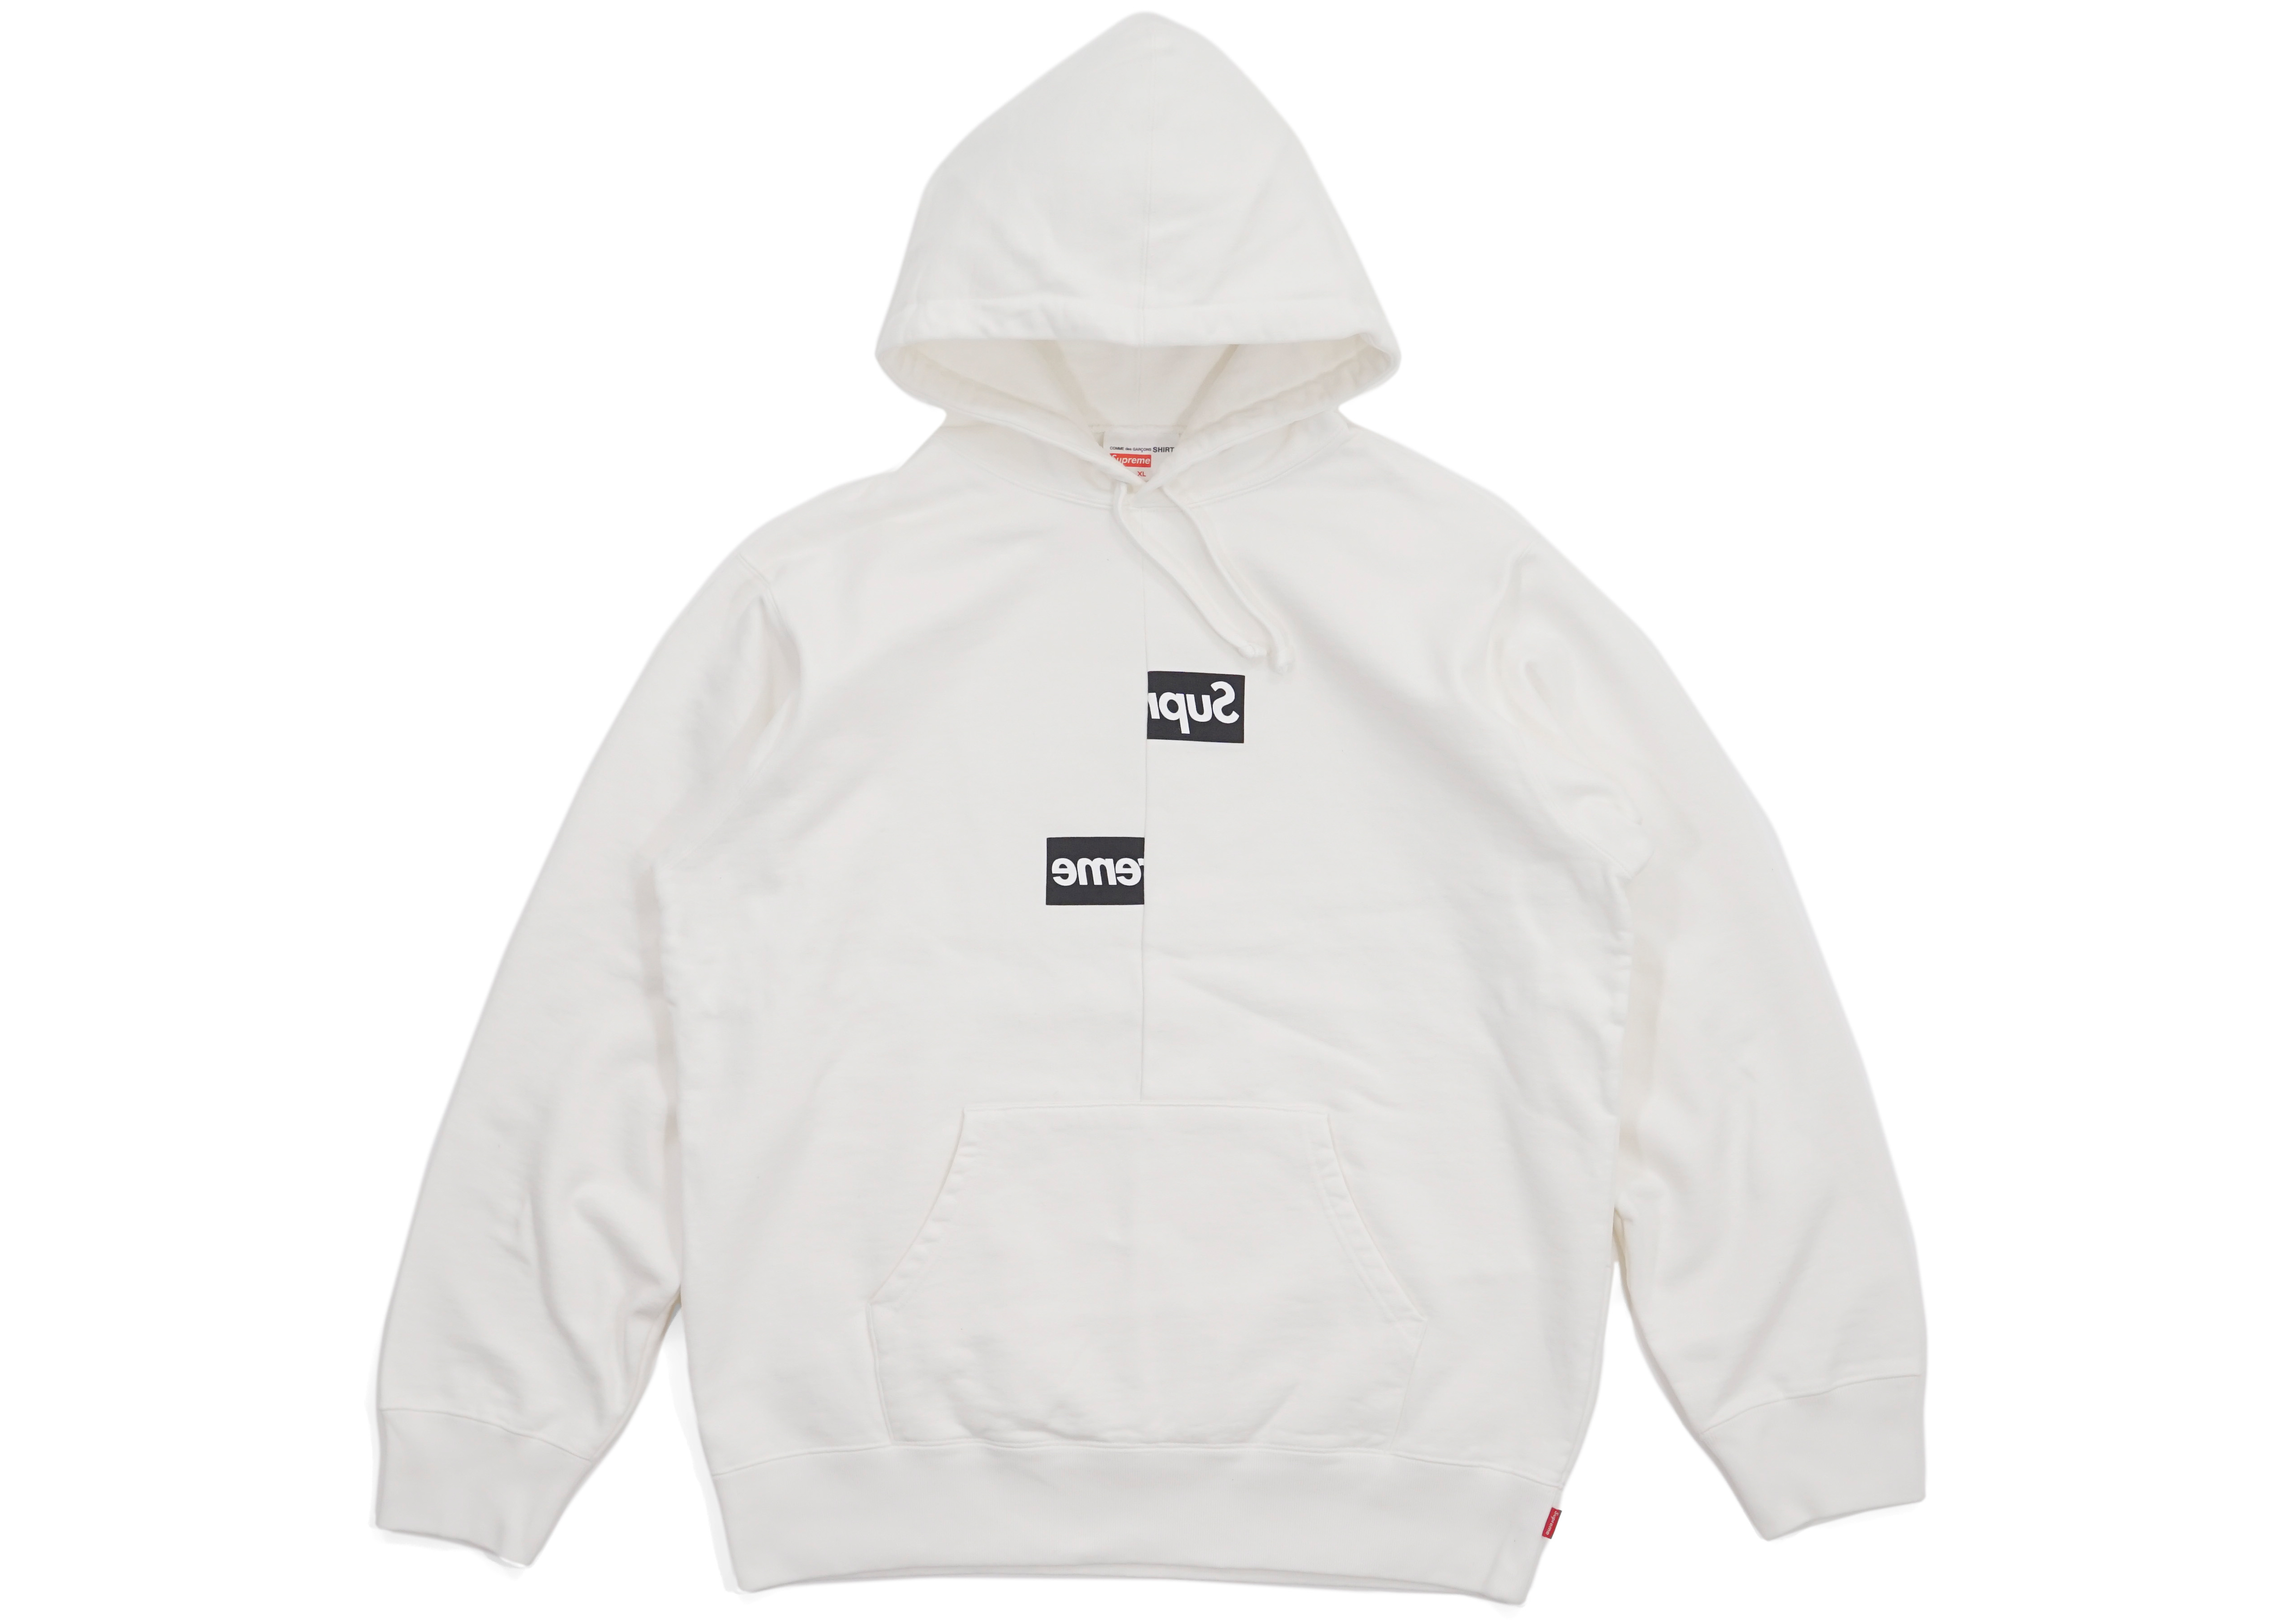 wholesale supreme hoodie